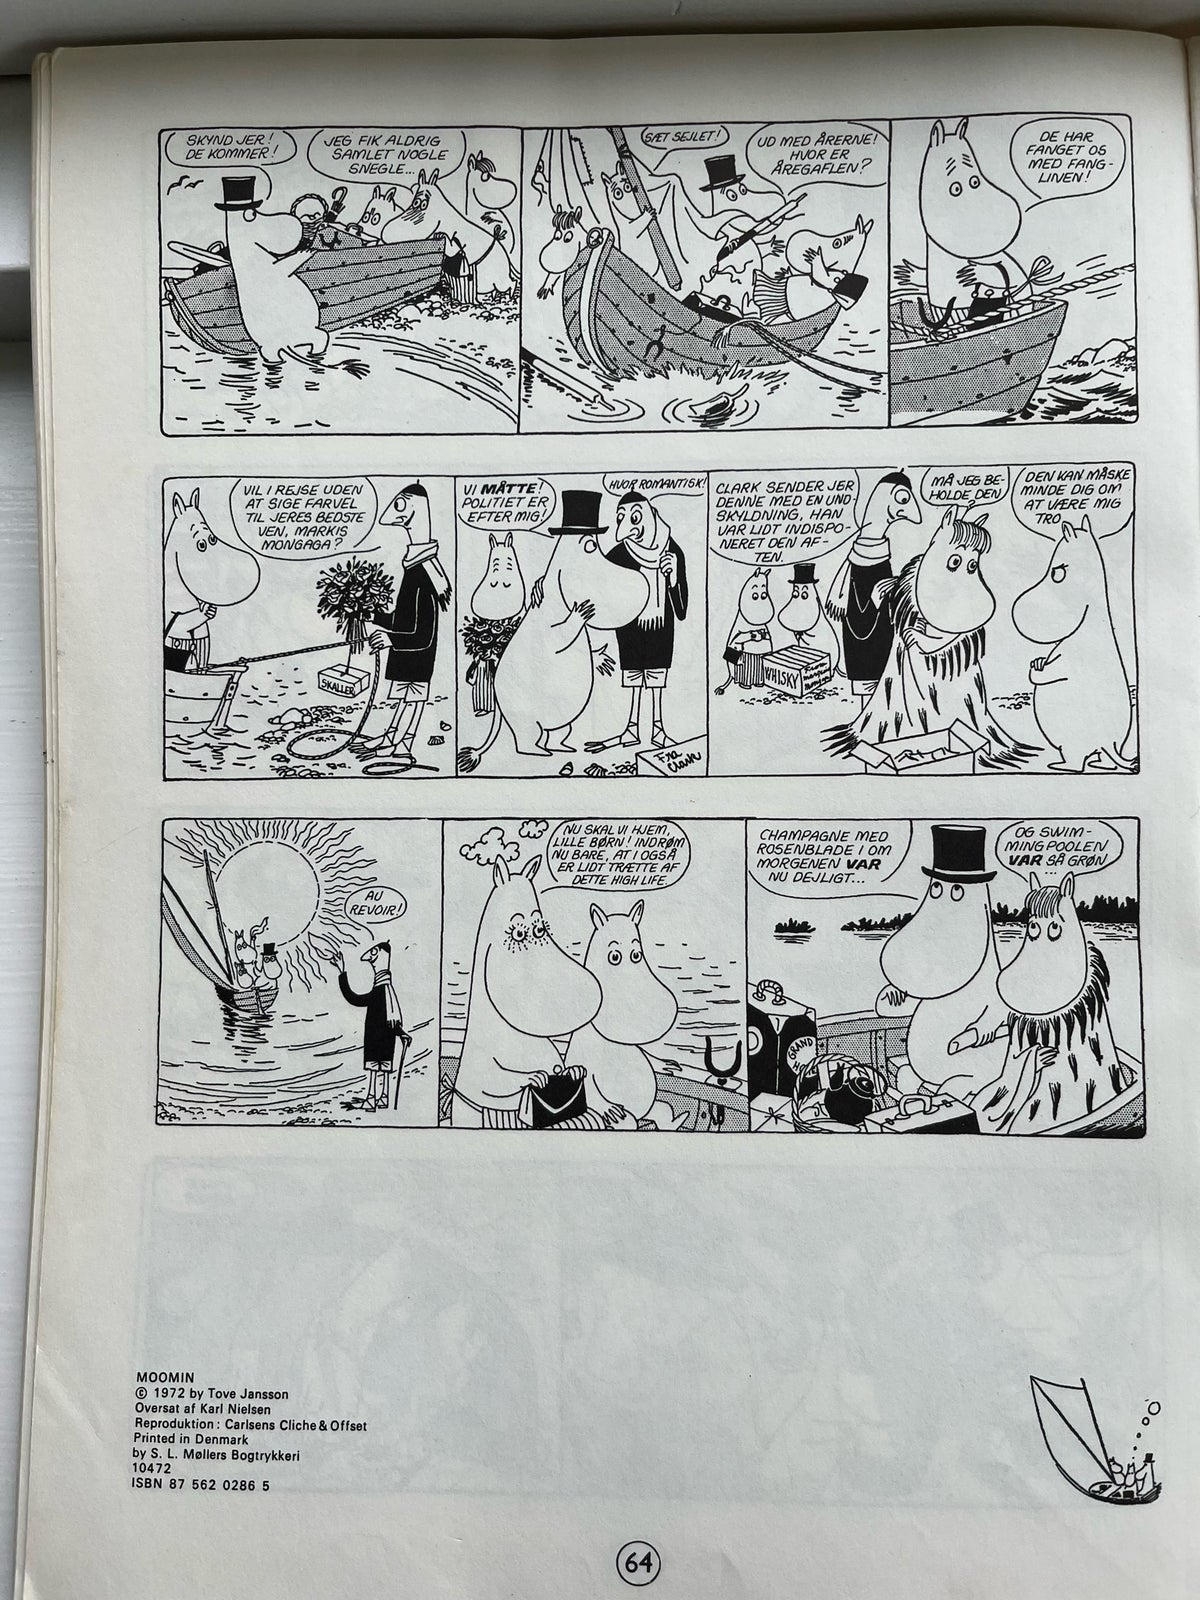 Mumi og røveren , Tove Jansson , Tegneserie